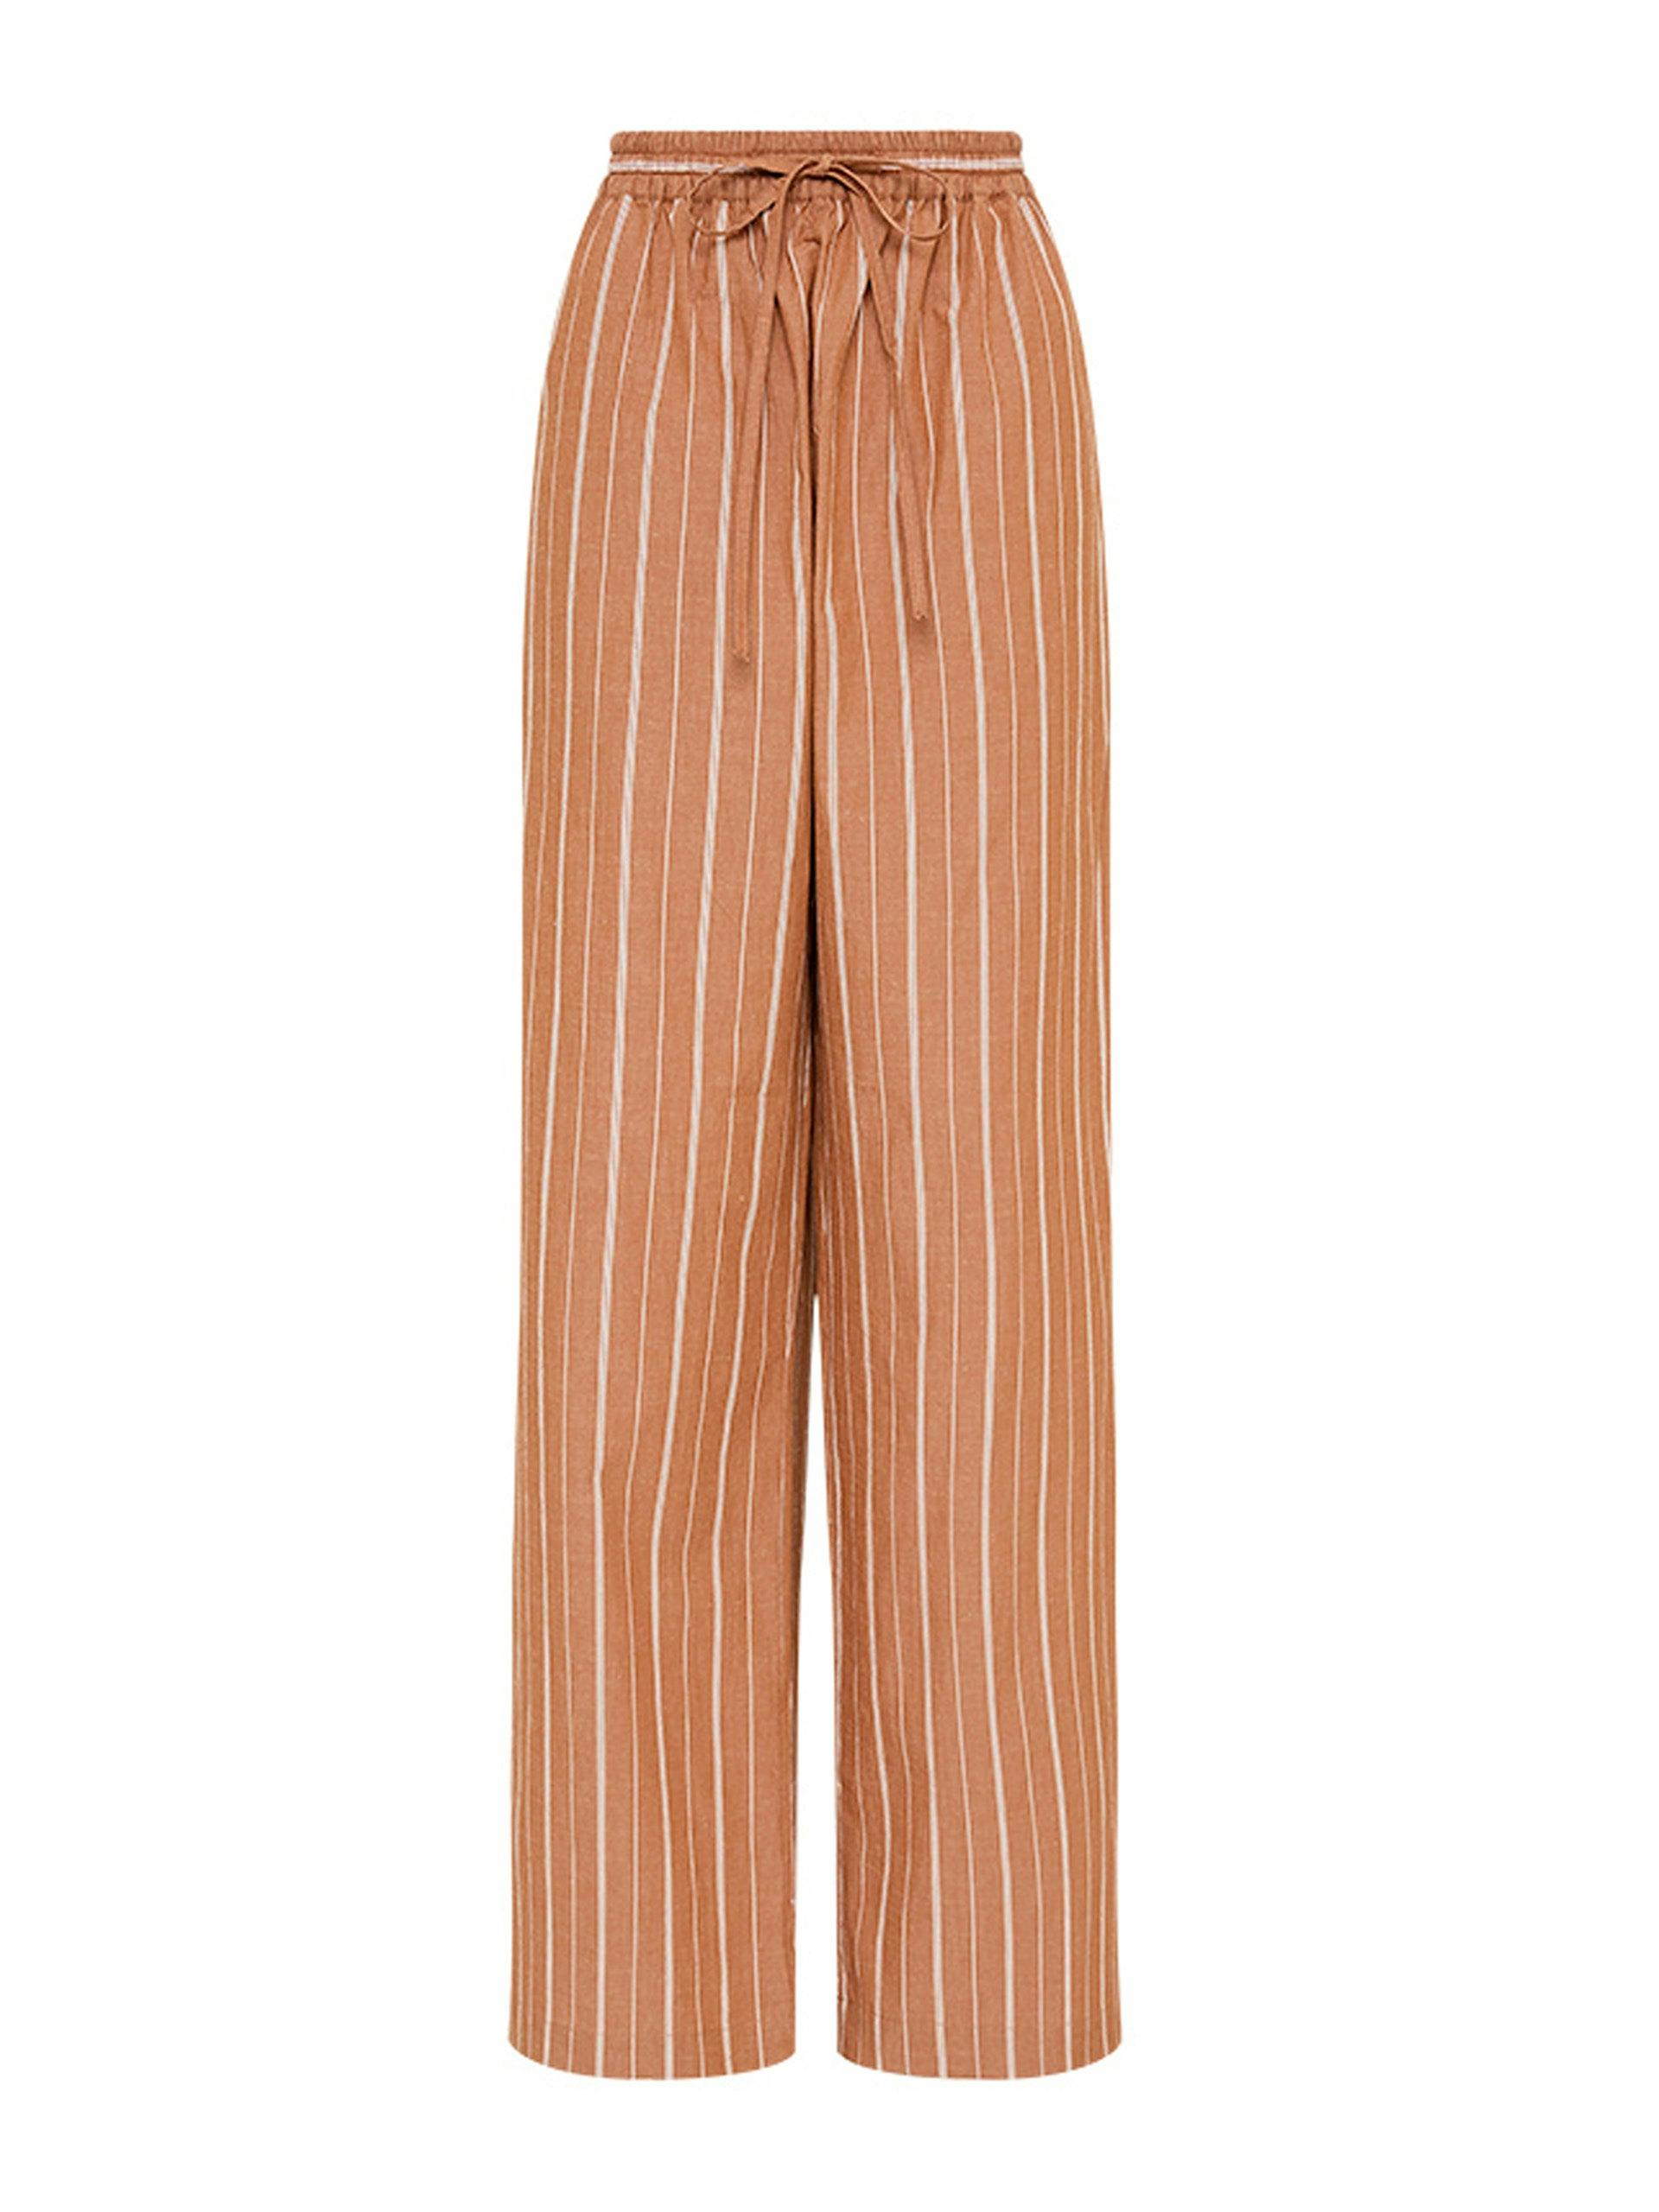 Desert stripe cotton relaxed trouser